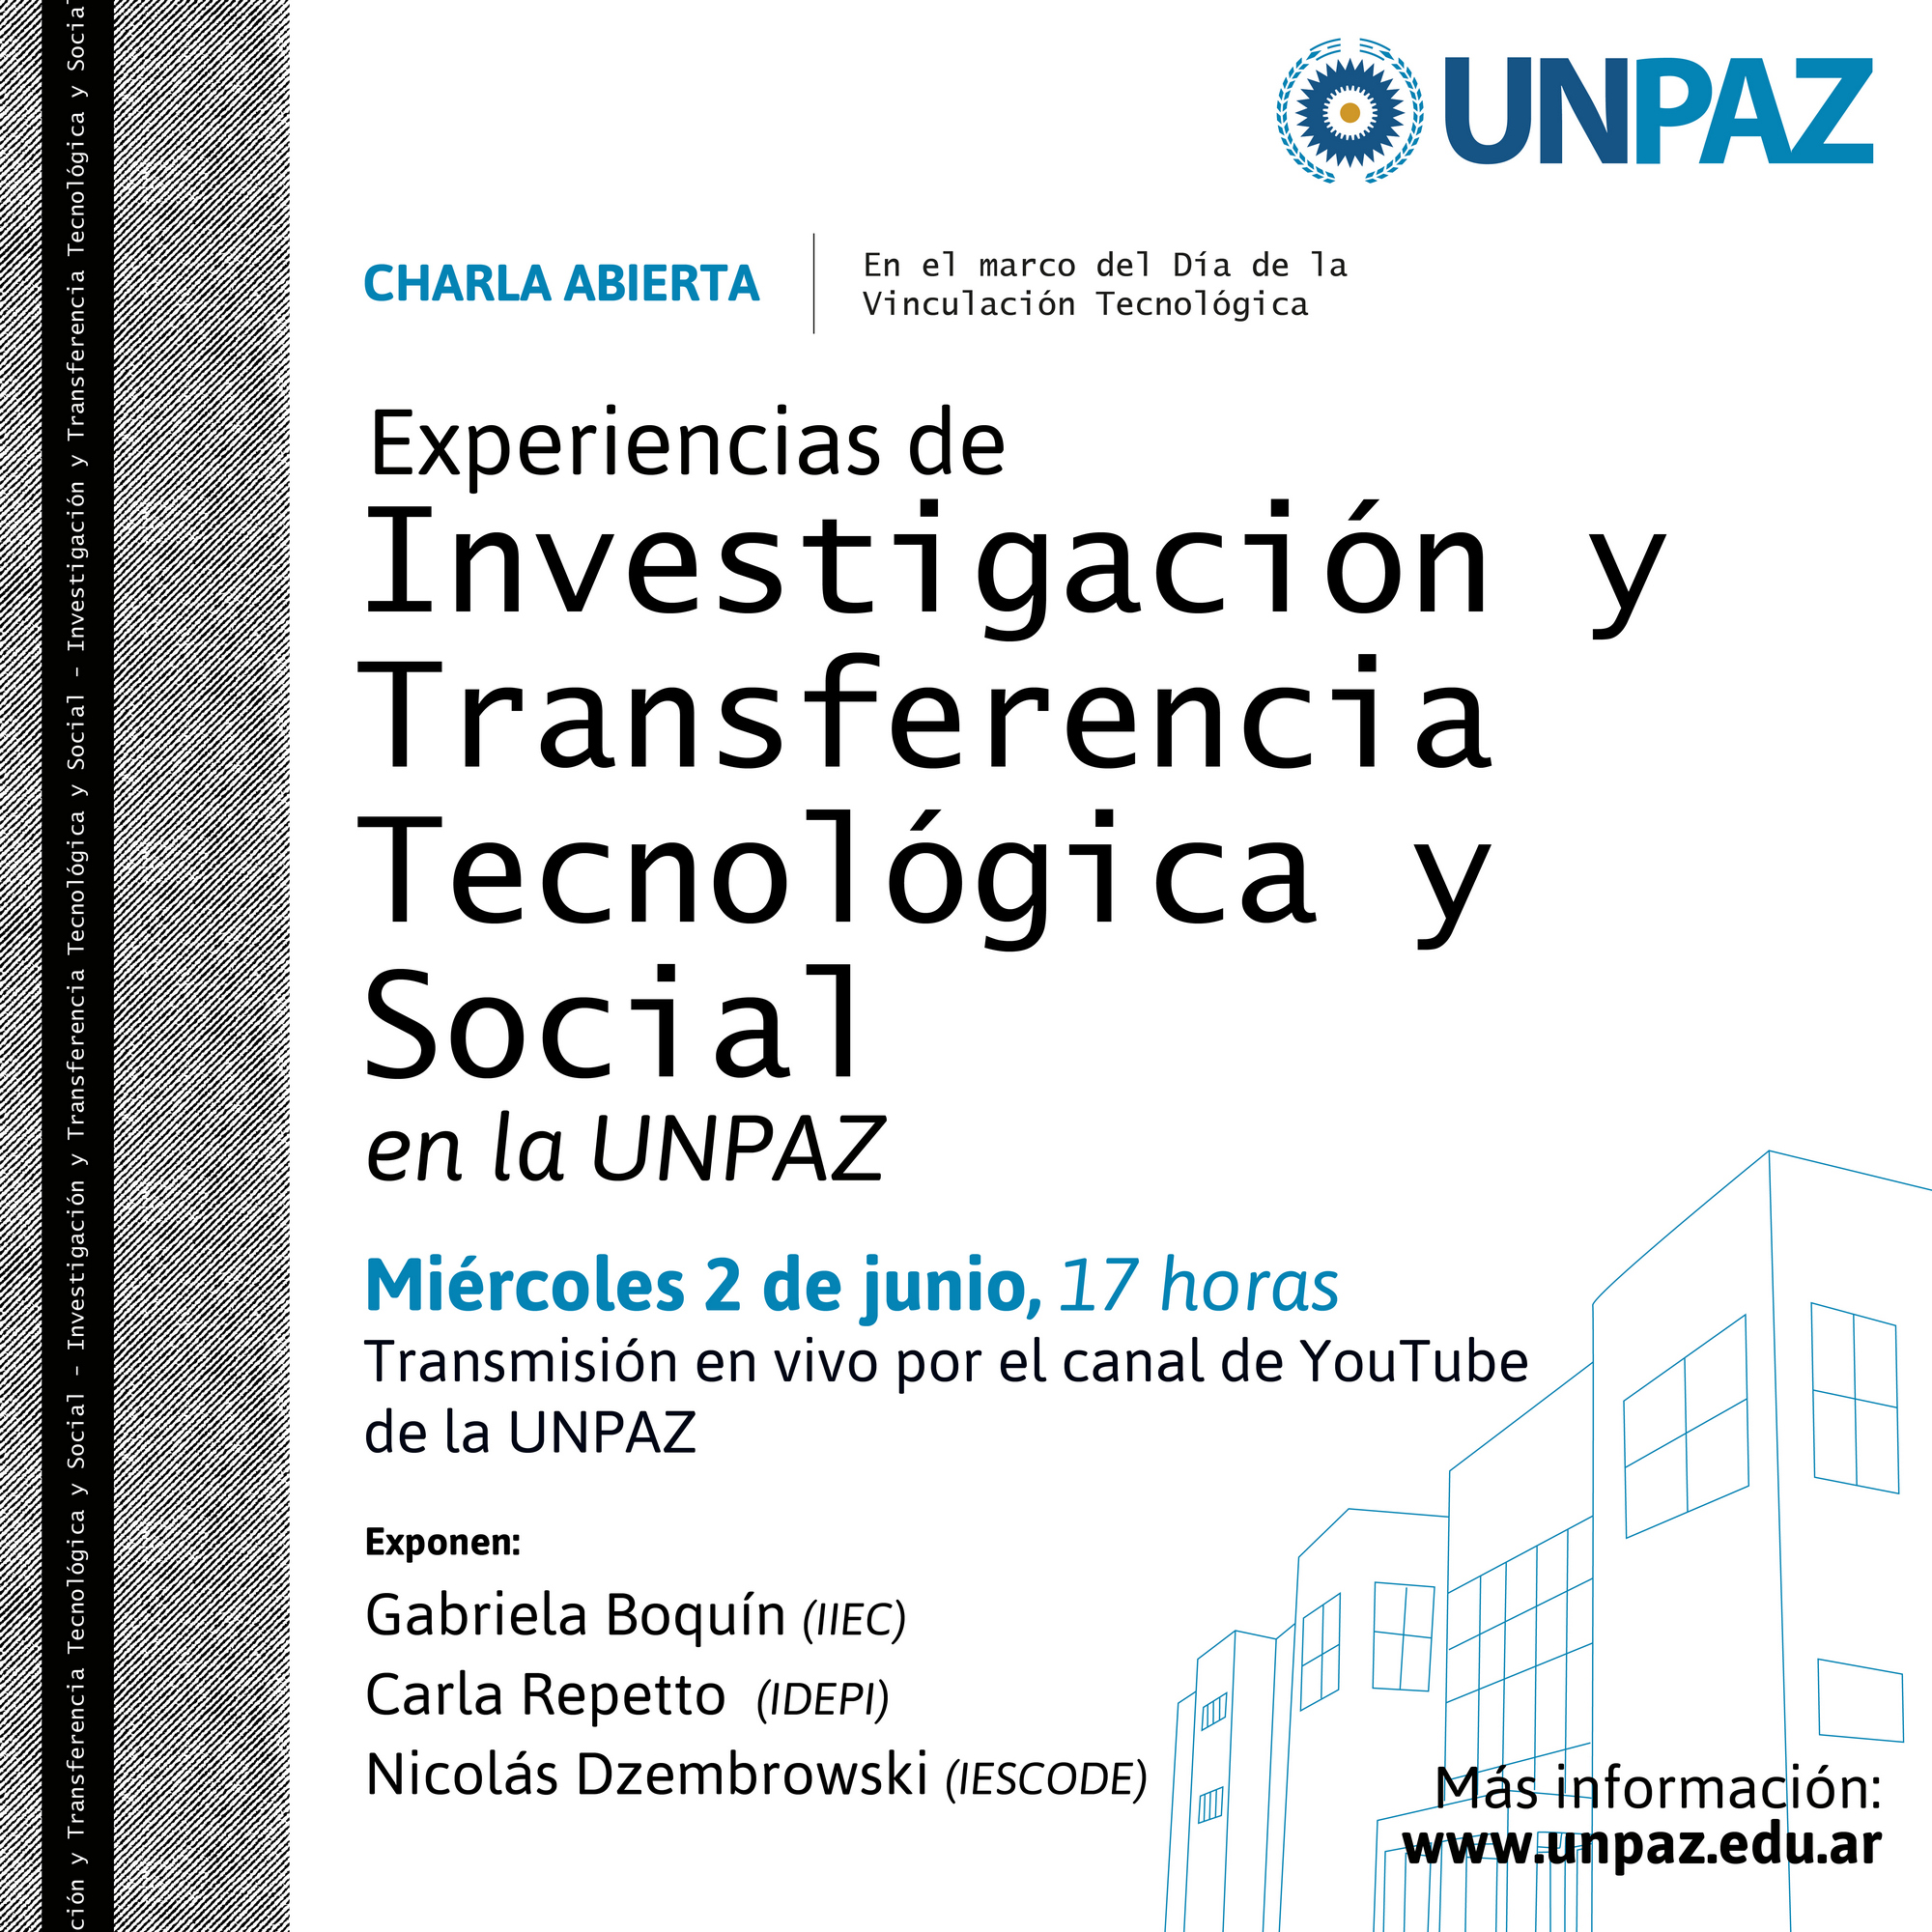 charla abierta “Experiencias de investigación y Transferencia Tecnológica y Social en la UNPAZ